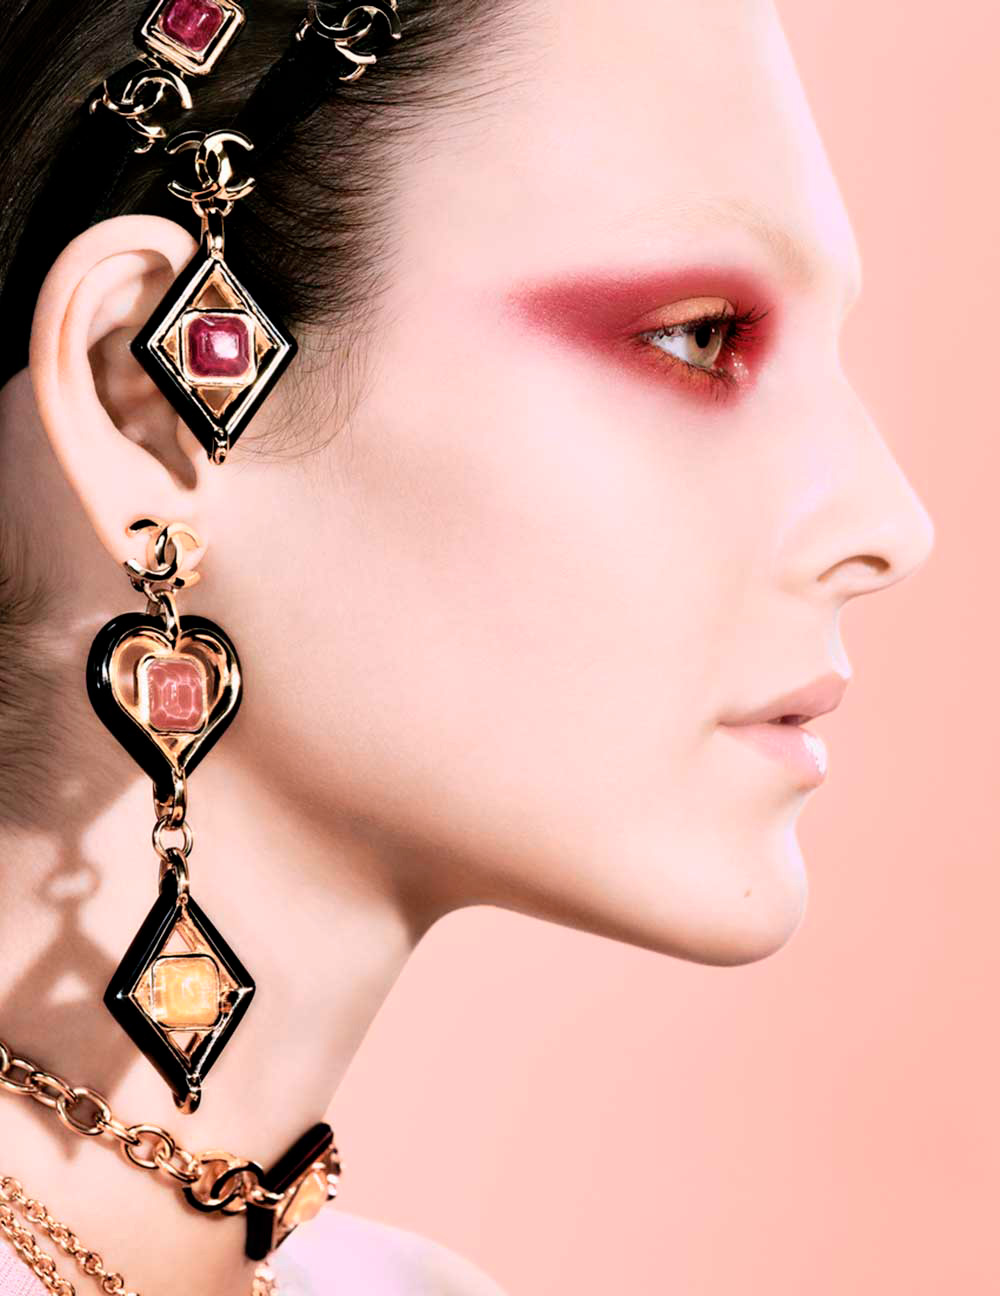 El arte bizantino hecho maquillaje por Chanel